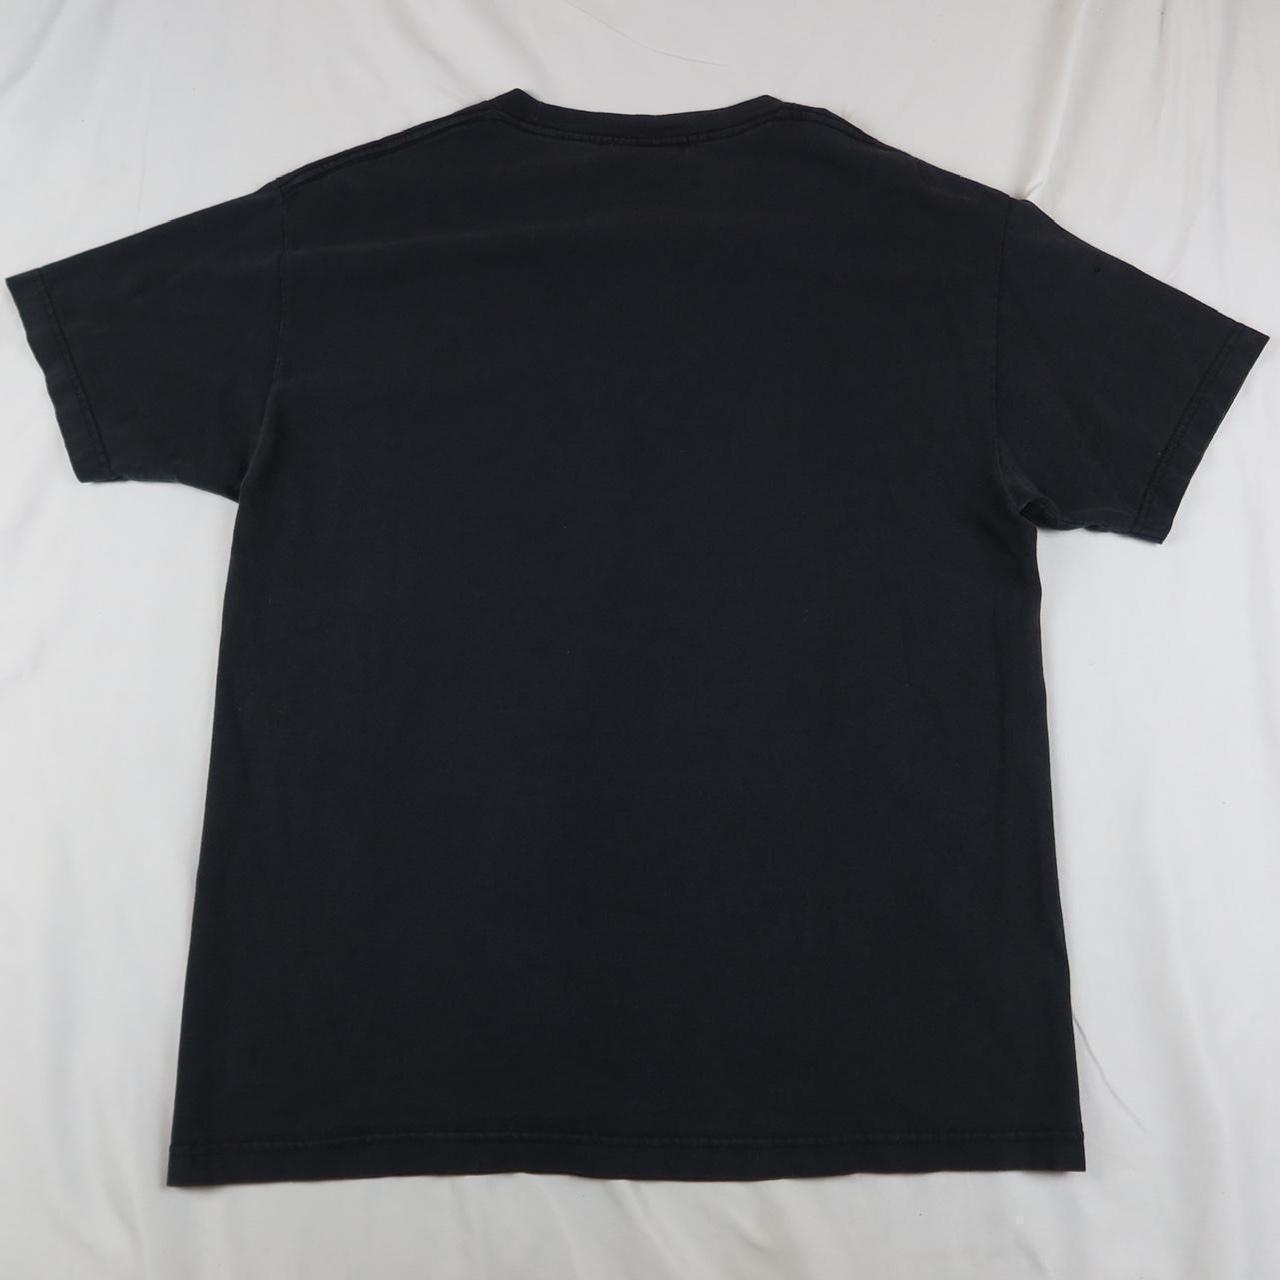 Vintage hook ups t shirt faded black in a size L - Depop